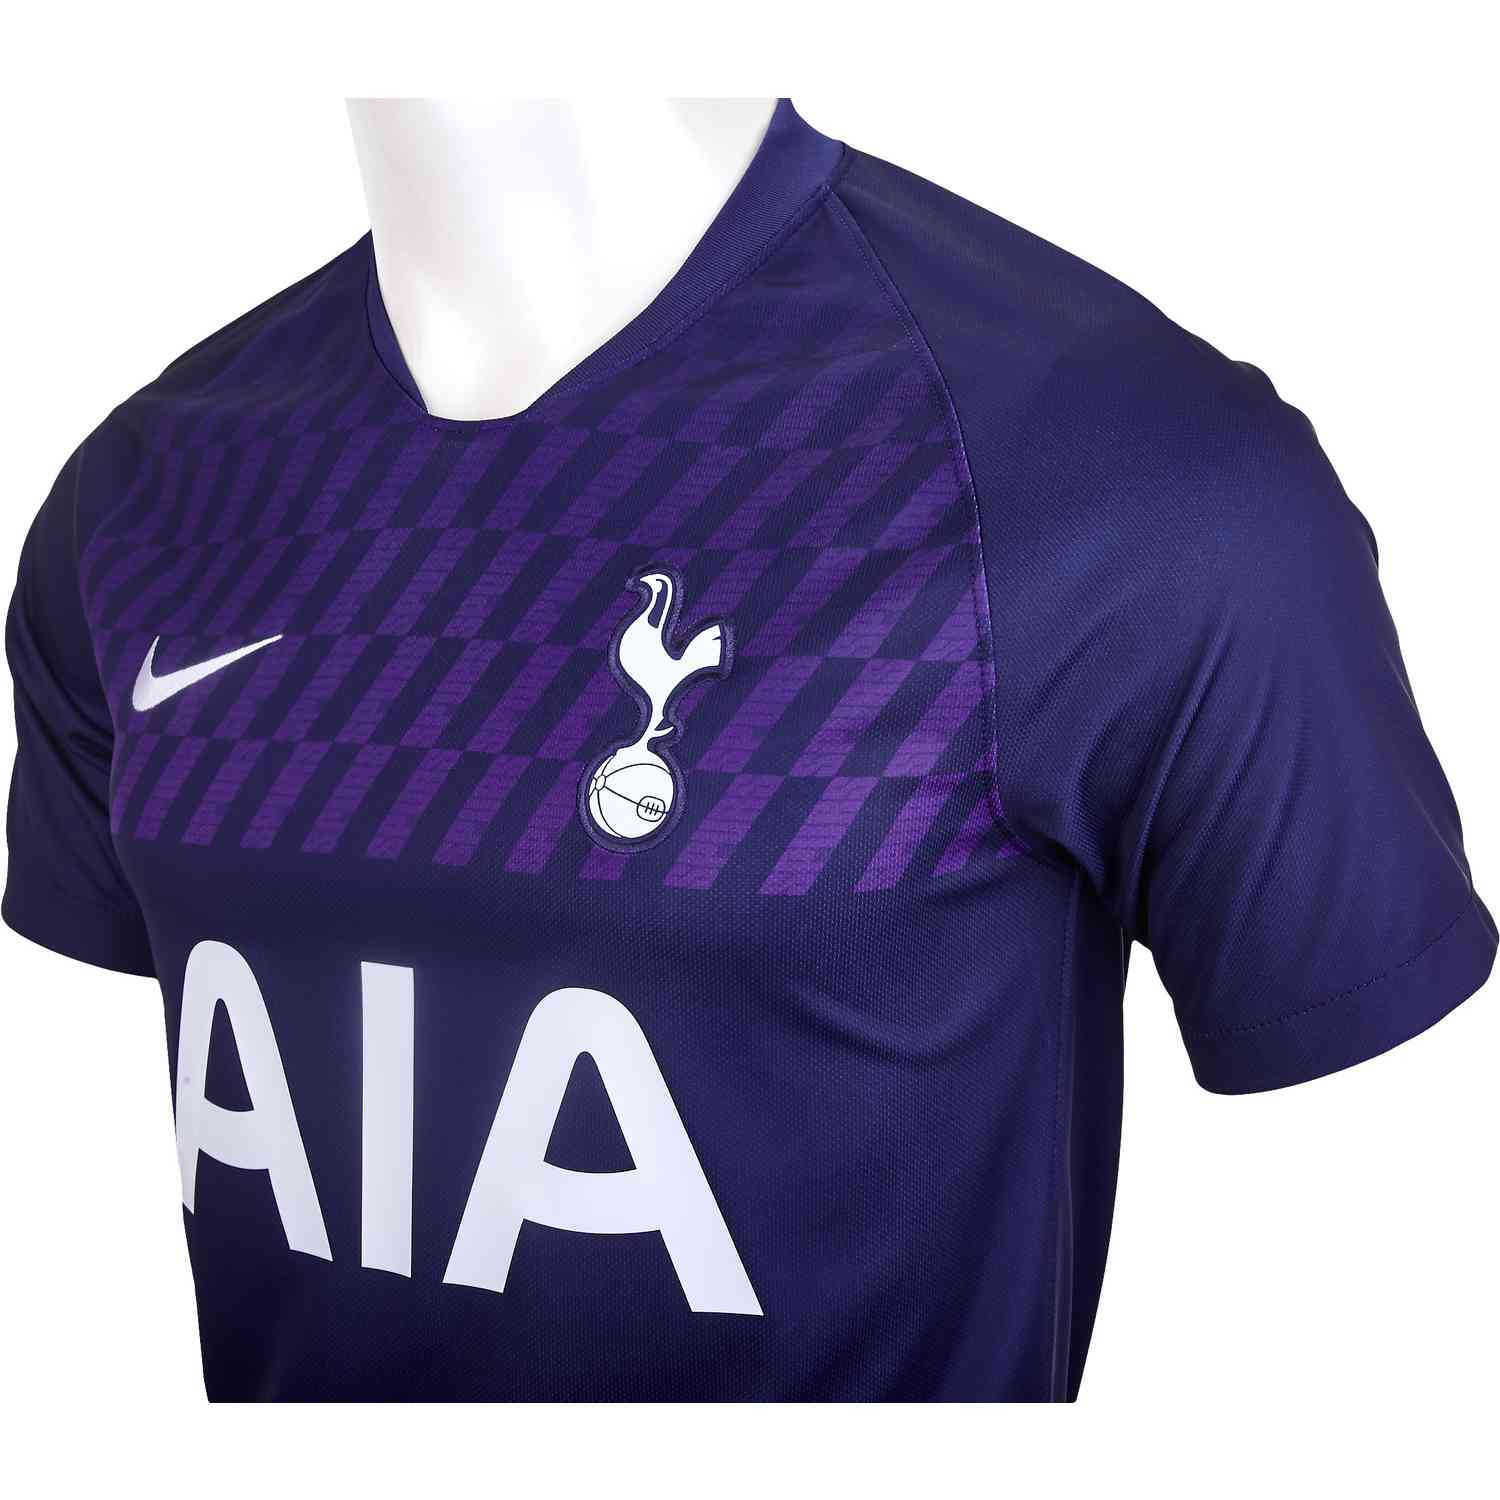 Tottenham 2019/20 Jersey Home  Football shirts, Soccer jersey, Jersey